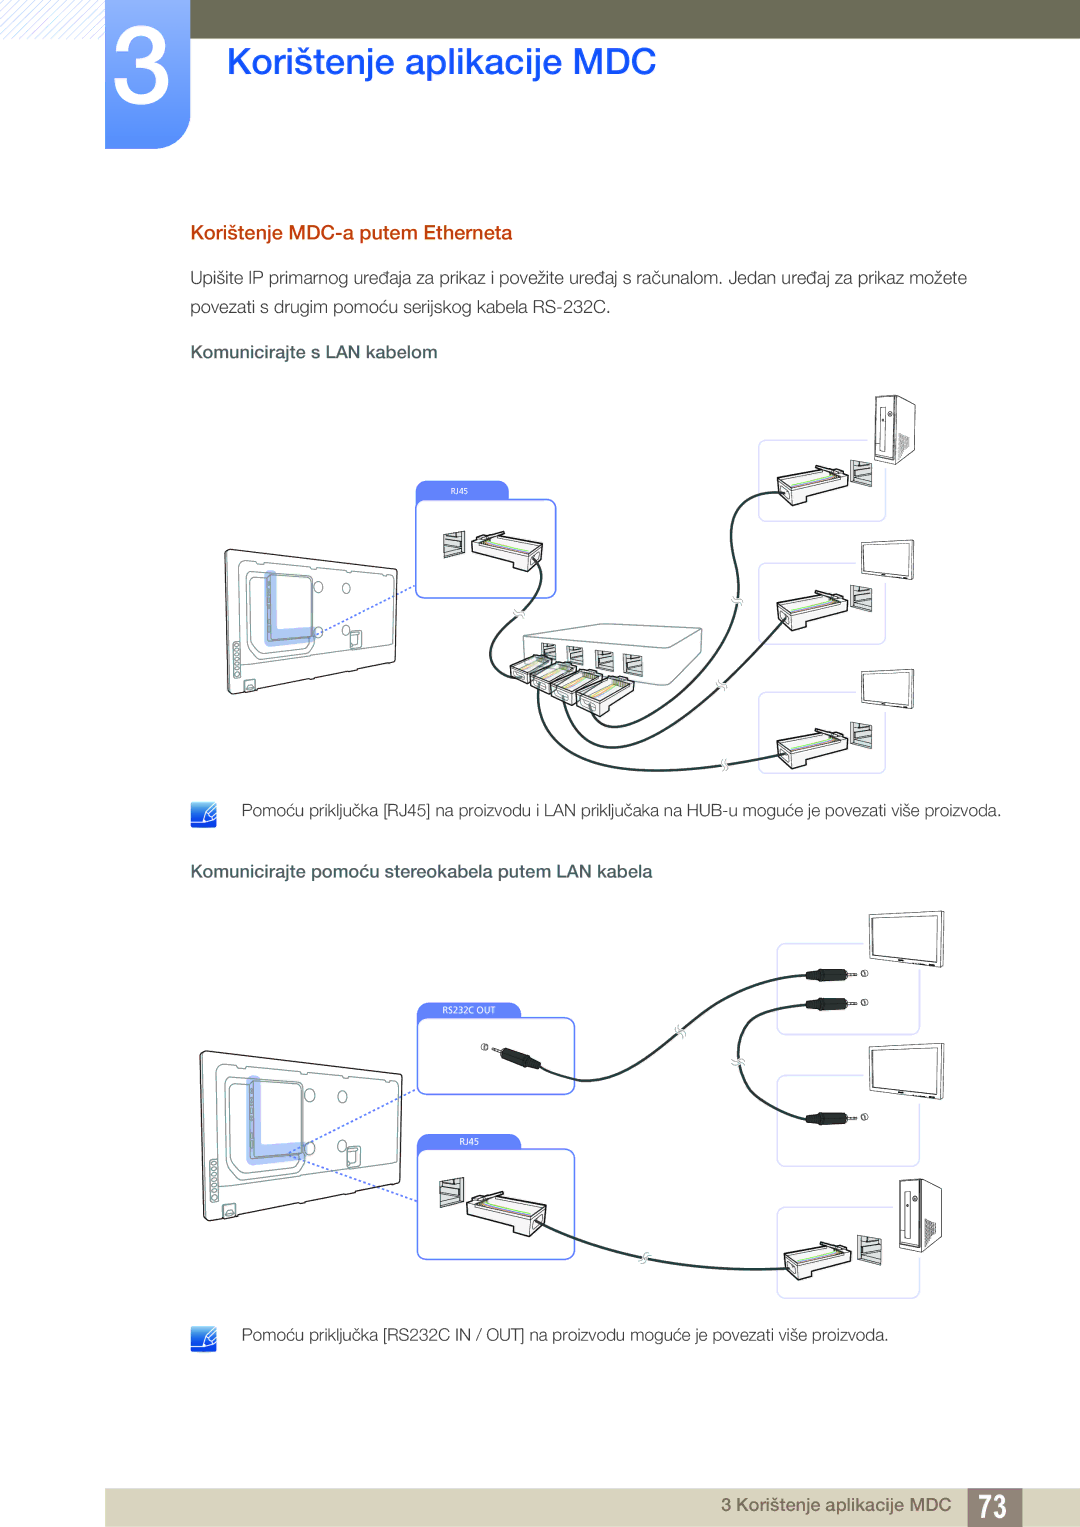 Samsung LH46UEAPLGC/EN, LH55UEAPLGC/EN, LH46UEPLGC/EN manual Korištenje MDC-a putem Etherneta, Komunicirajte s LAN kabelom 